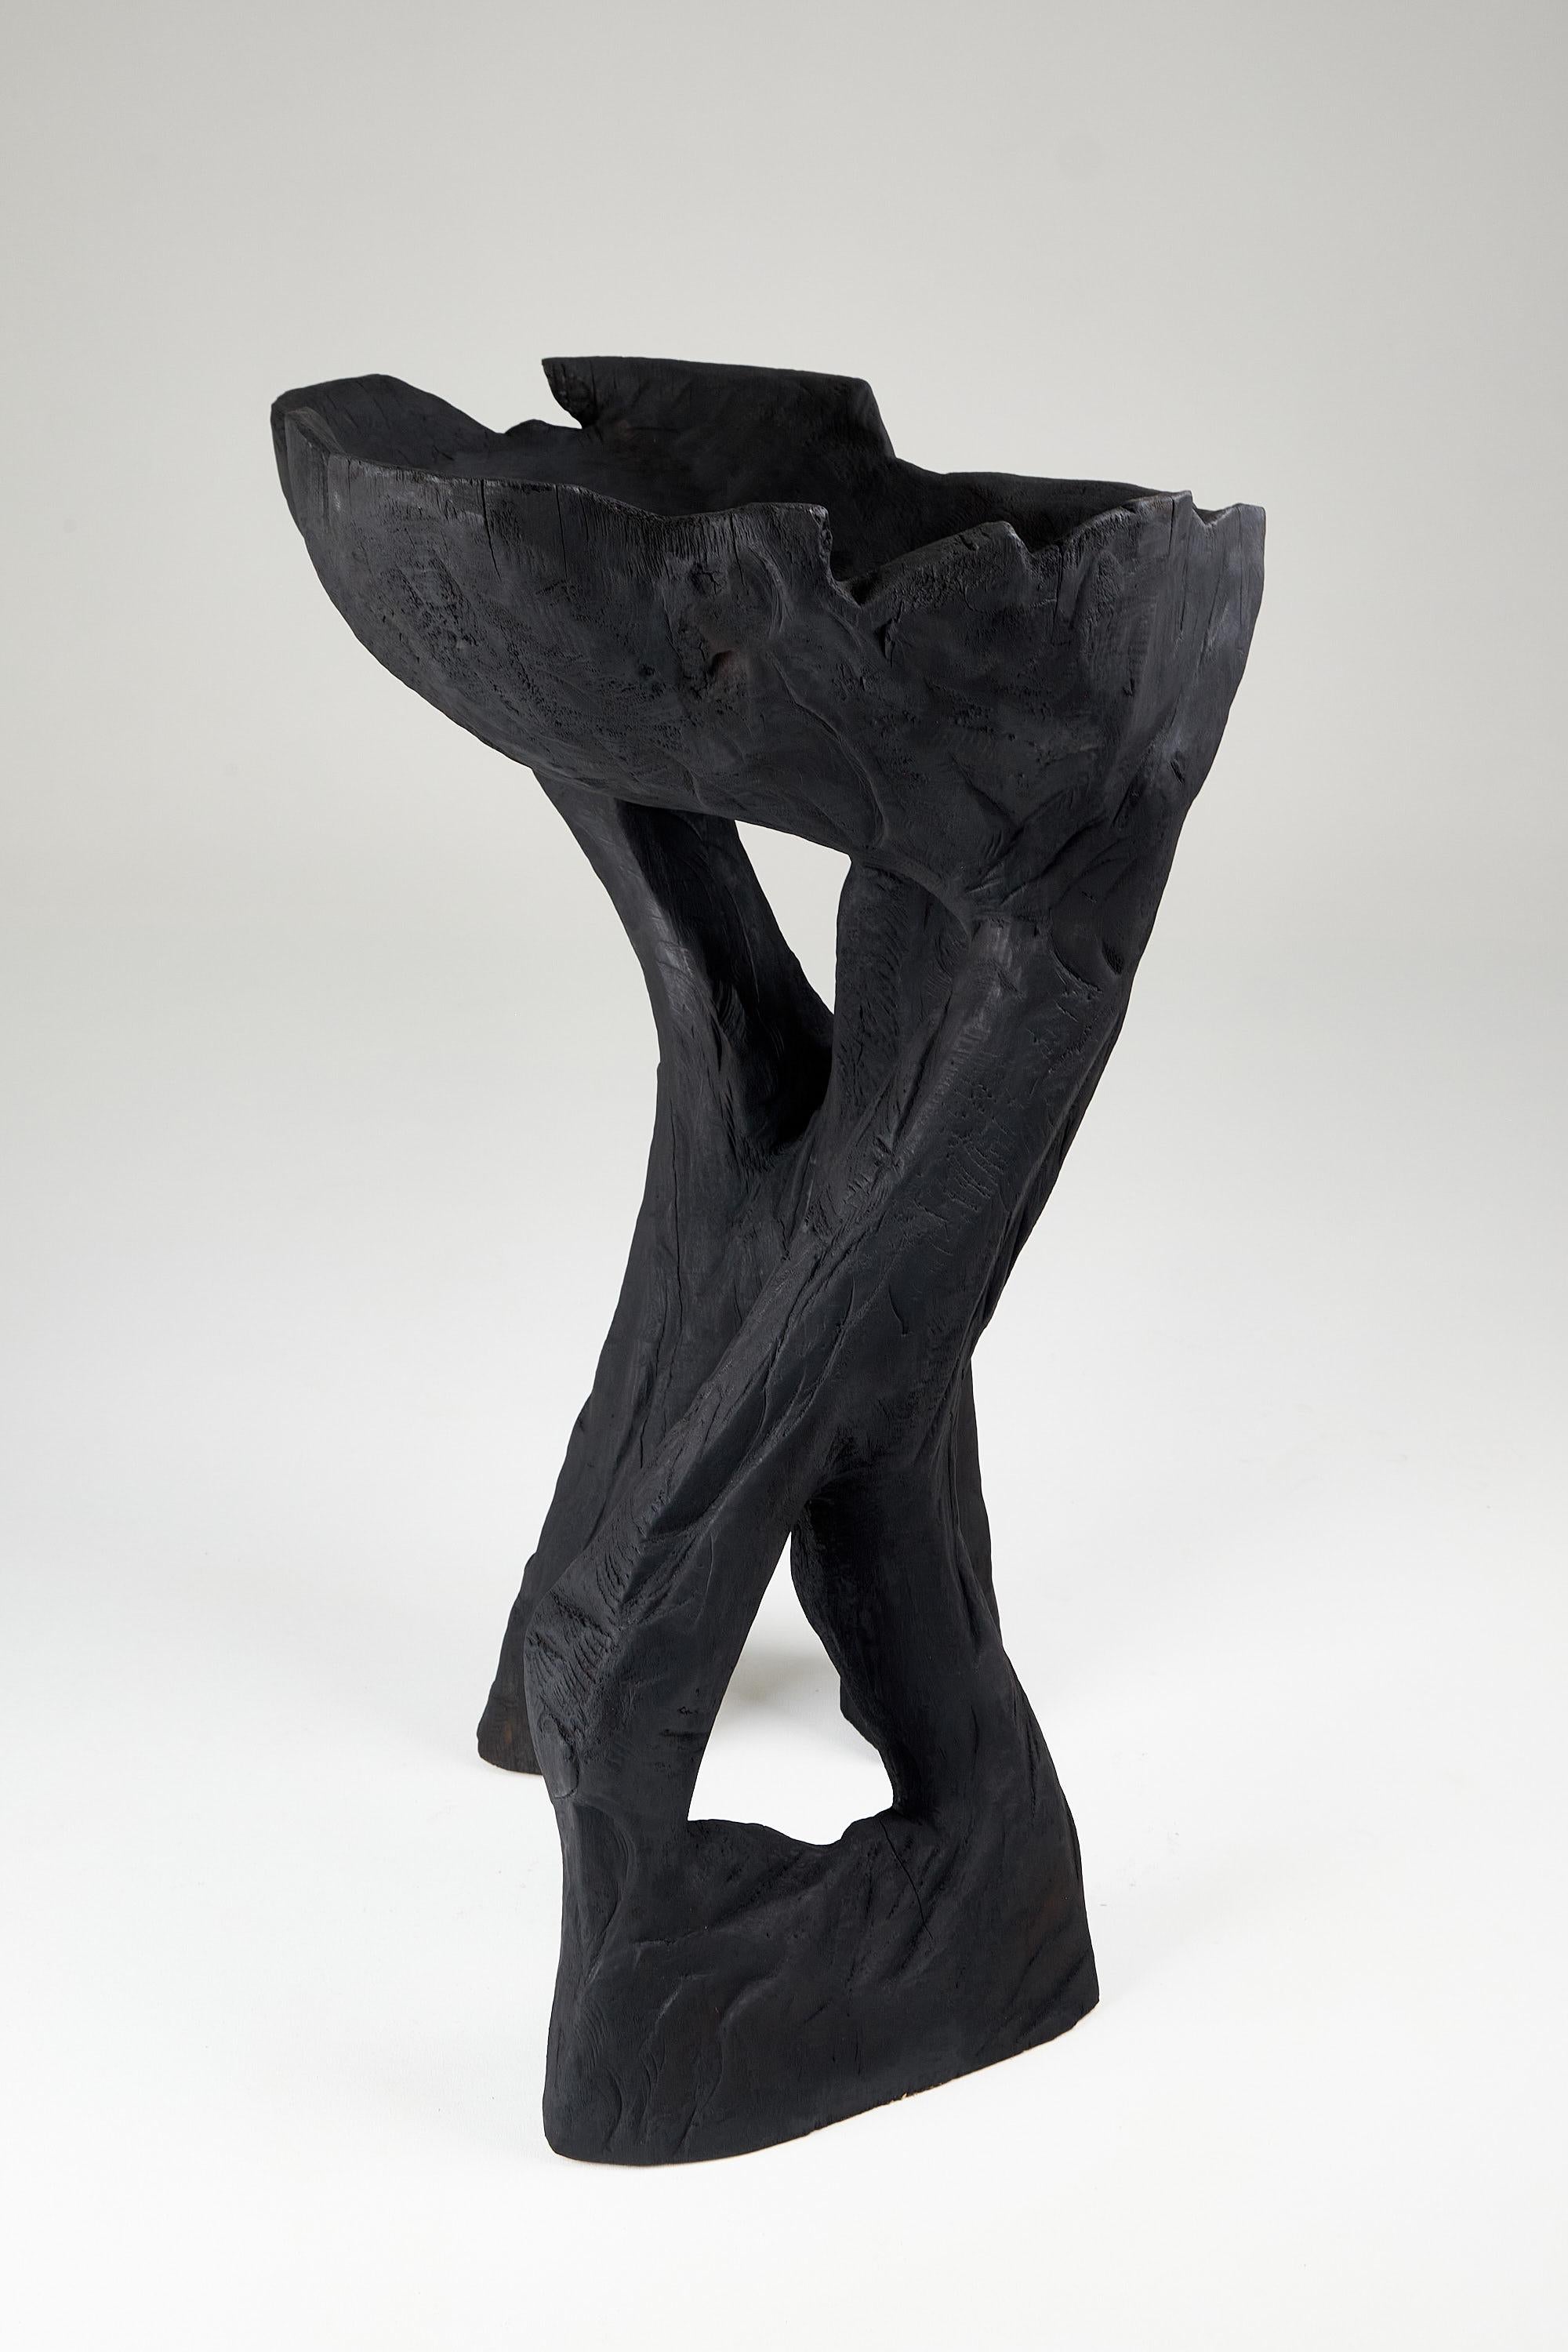 Still Stand Abstrakte Biomorphe Holzschale, Kettensäge geschnitzt, Funktionelle Skulptur im Angebot 2